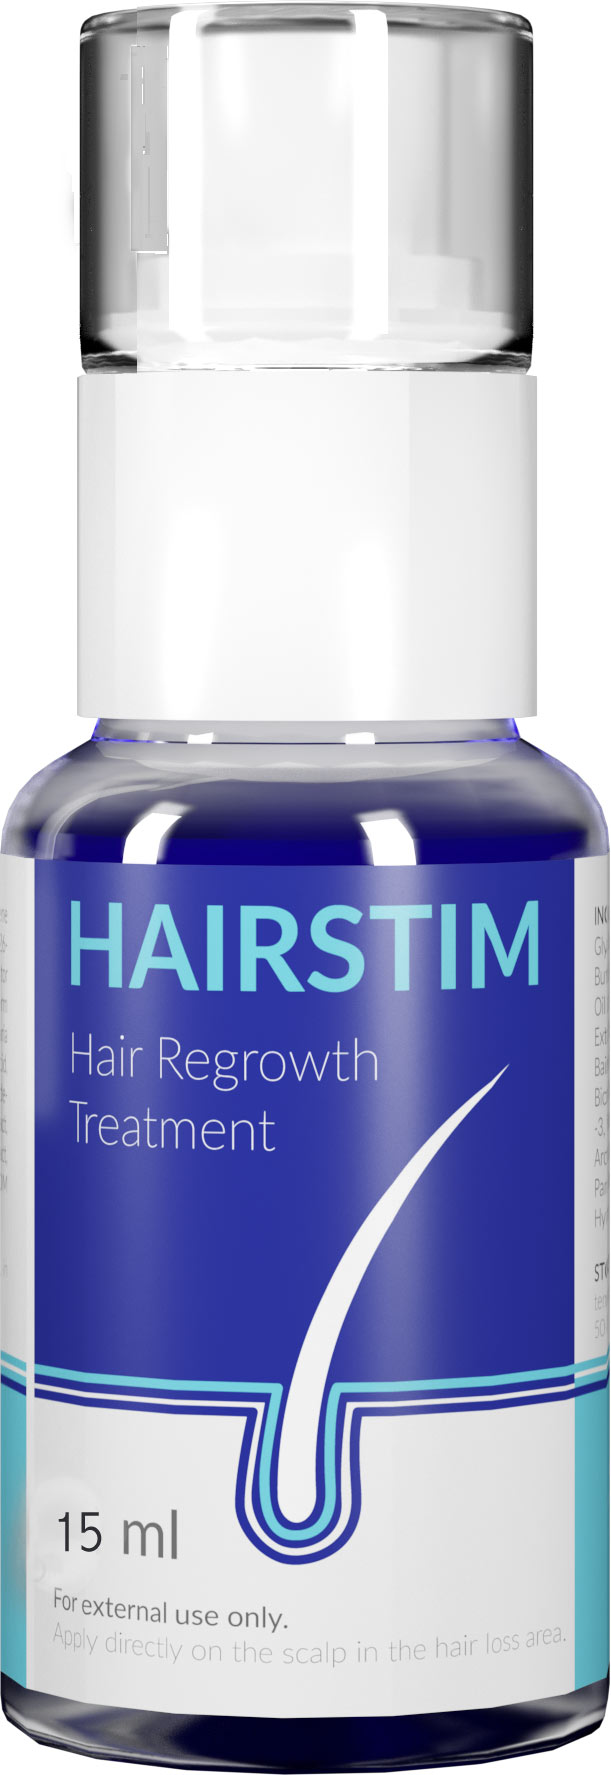 Hairstim – farmacia – prezzo – forum – funziona – recensioni